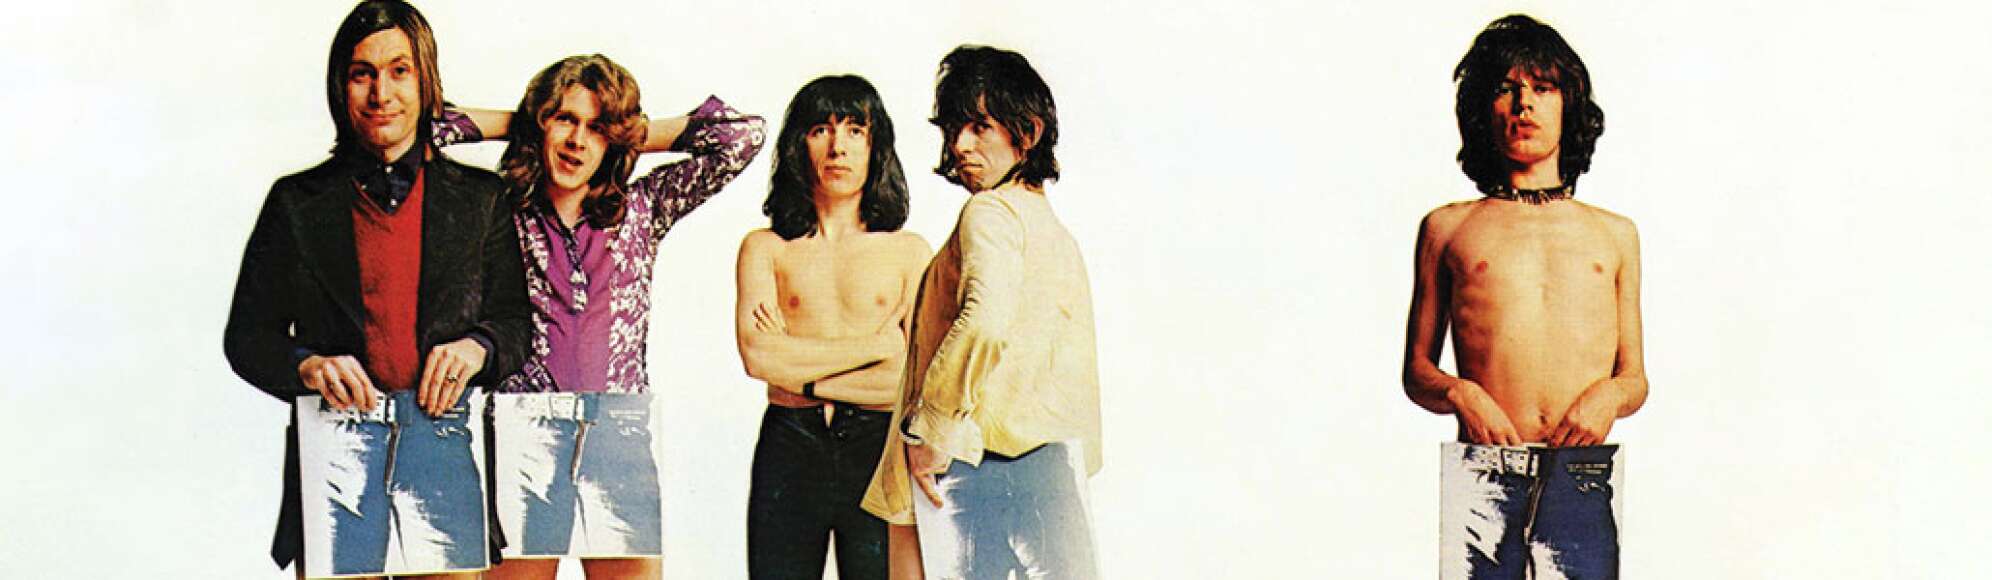 Rolling Stones mit Aufgezeichneten Hosen vor einer Weißen Wand